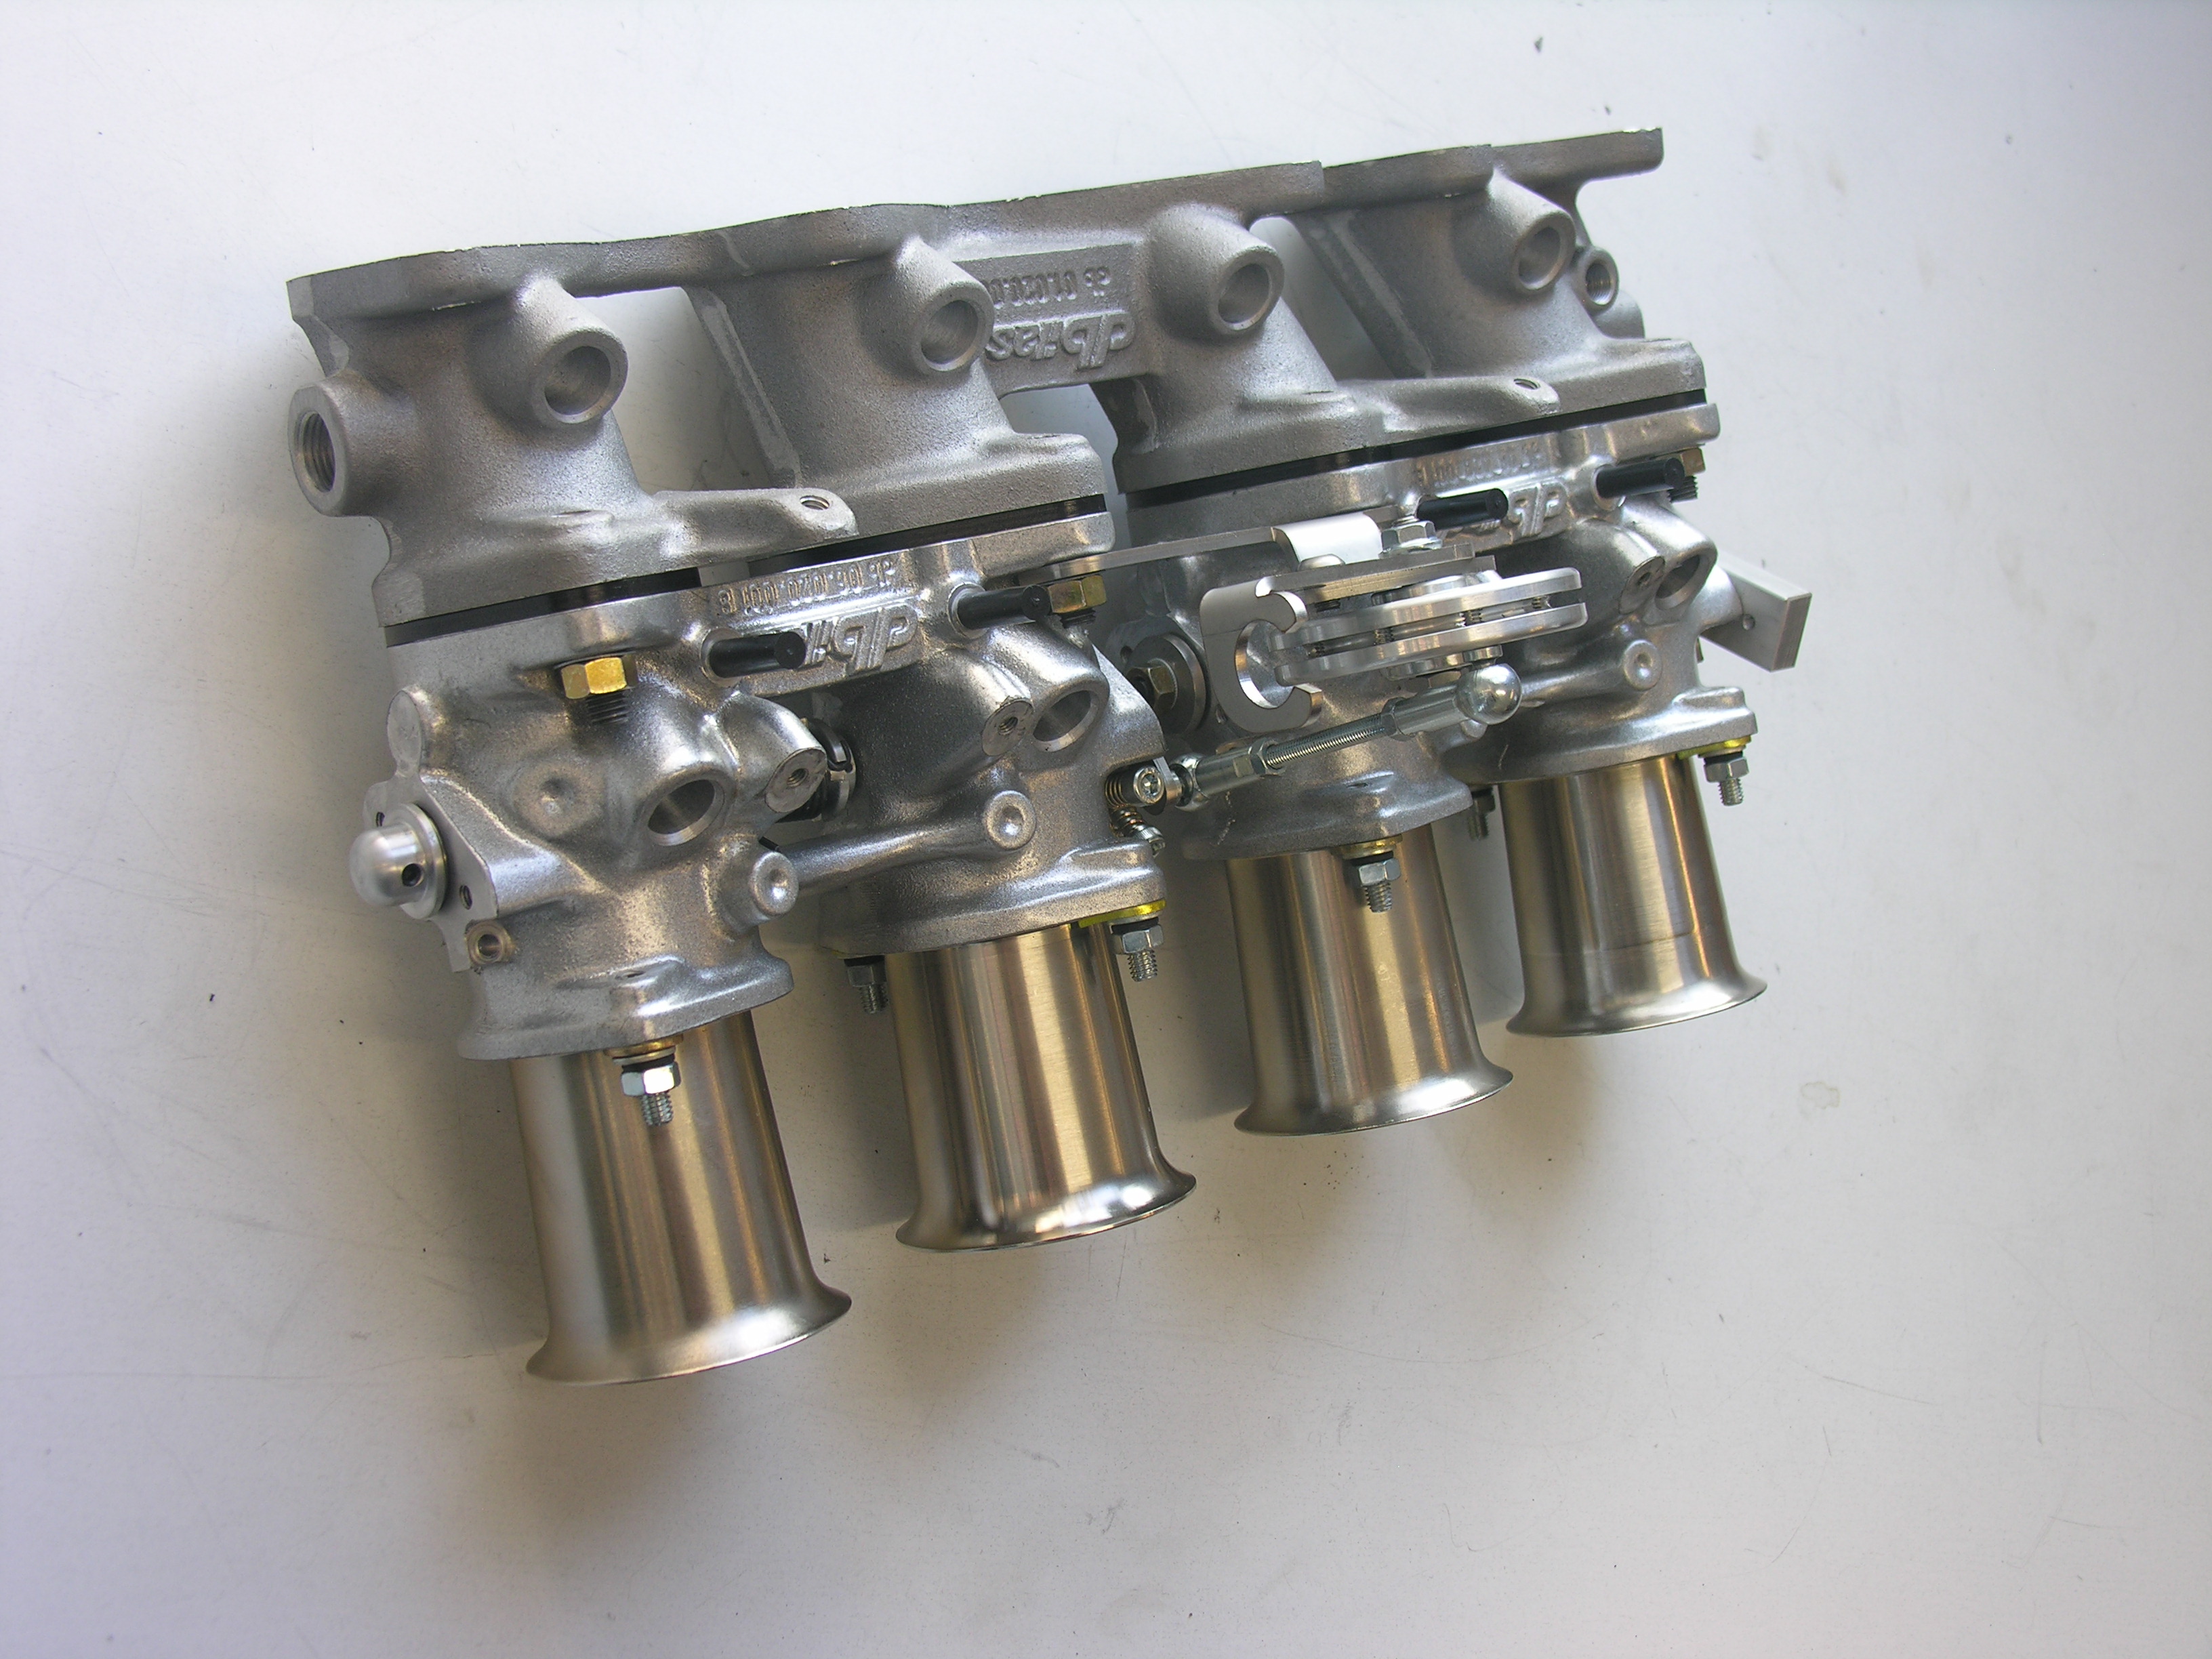 Mutli-throttle intake system for racing  for Opel / Vauxhall   Corsa  1,6 8V 72kW    C16SE / C16SEI / E16SE